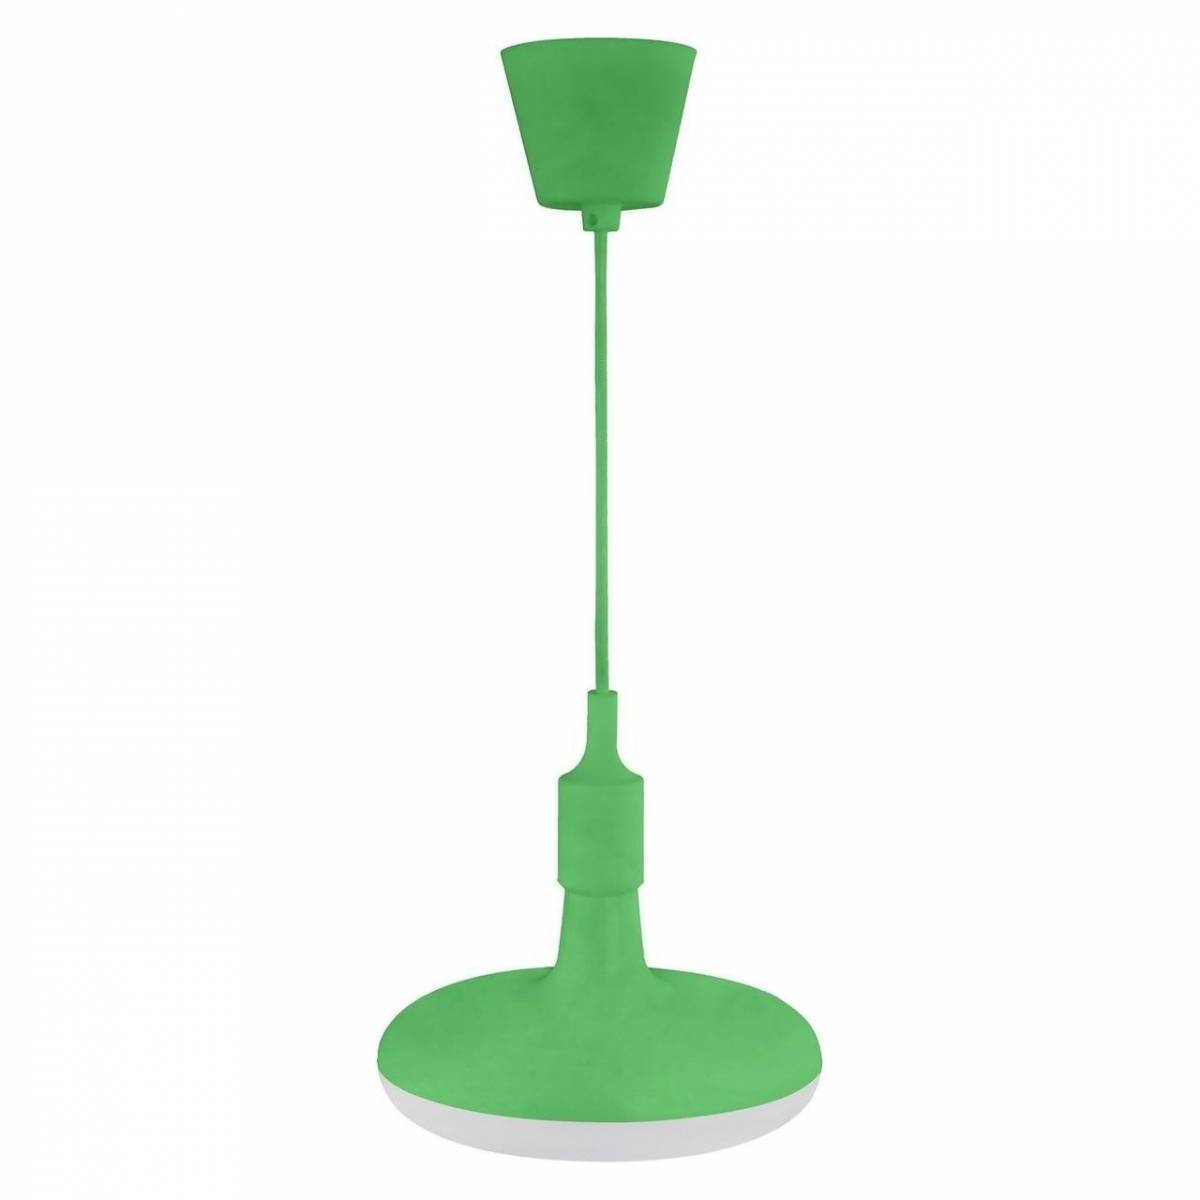 Подвесной светильник Horoz 020-006 020-006-0012 Светодиодный св-к подвесной 12W 4000К Зеленый